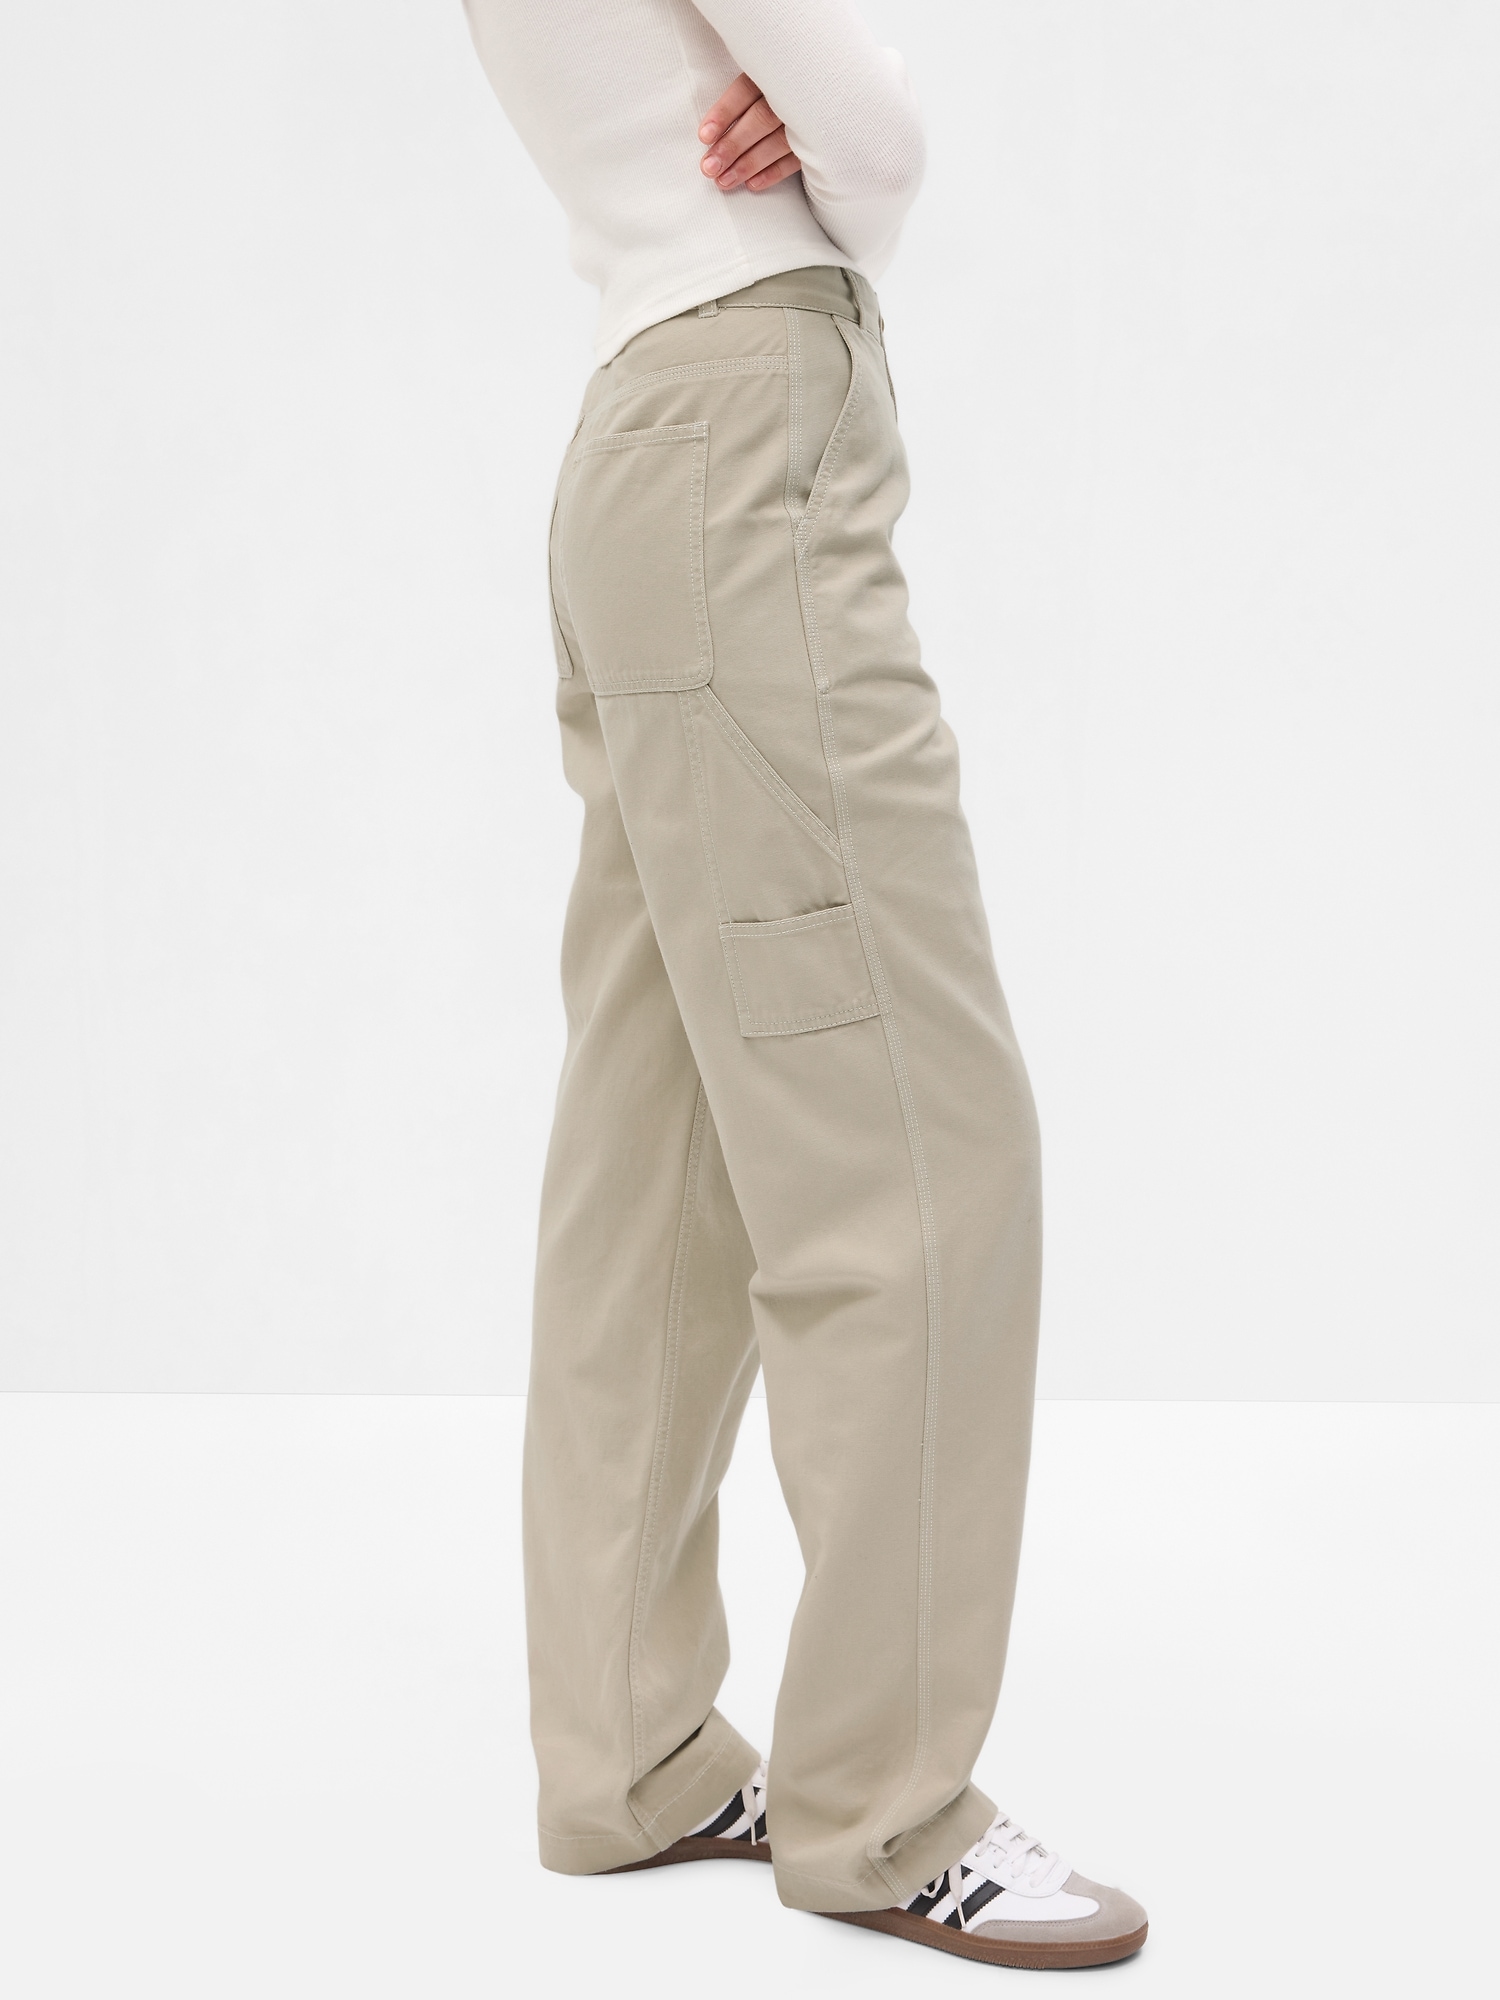 GAP Slim Fit Men Khaki Trousers - Buy GAP Slim Fit Men Khaki Trousers Online  at Best Prices in India | Flipkart.com